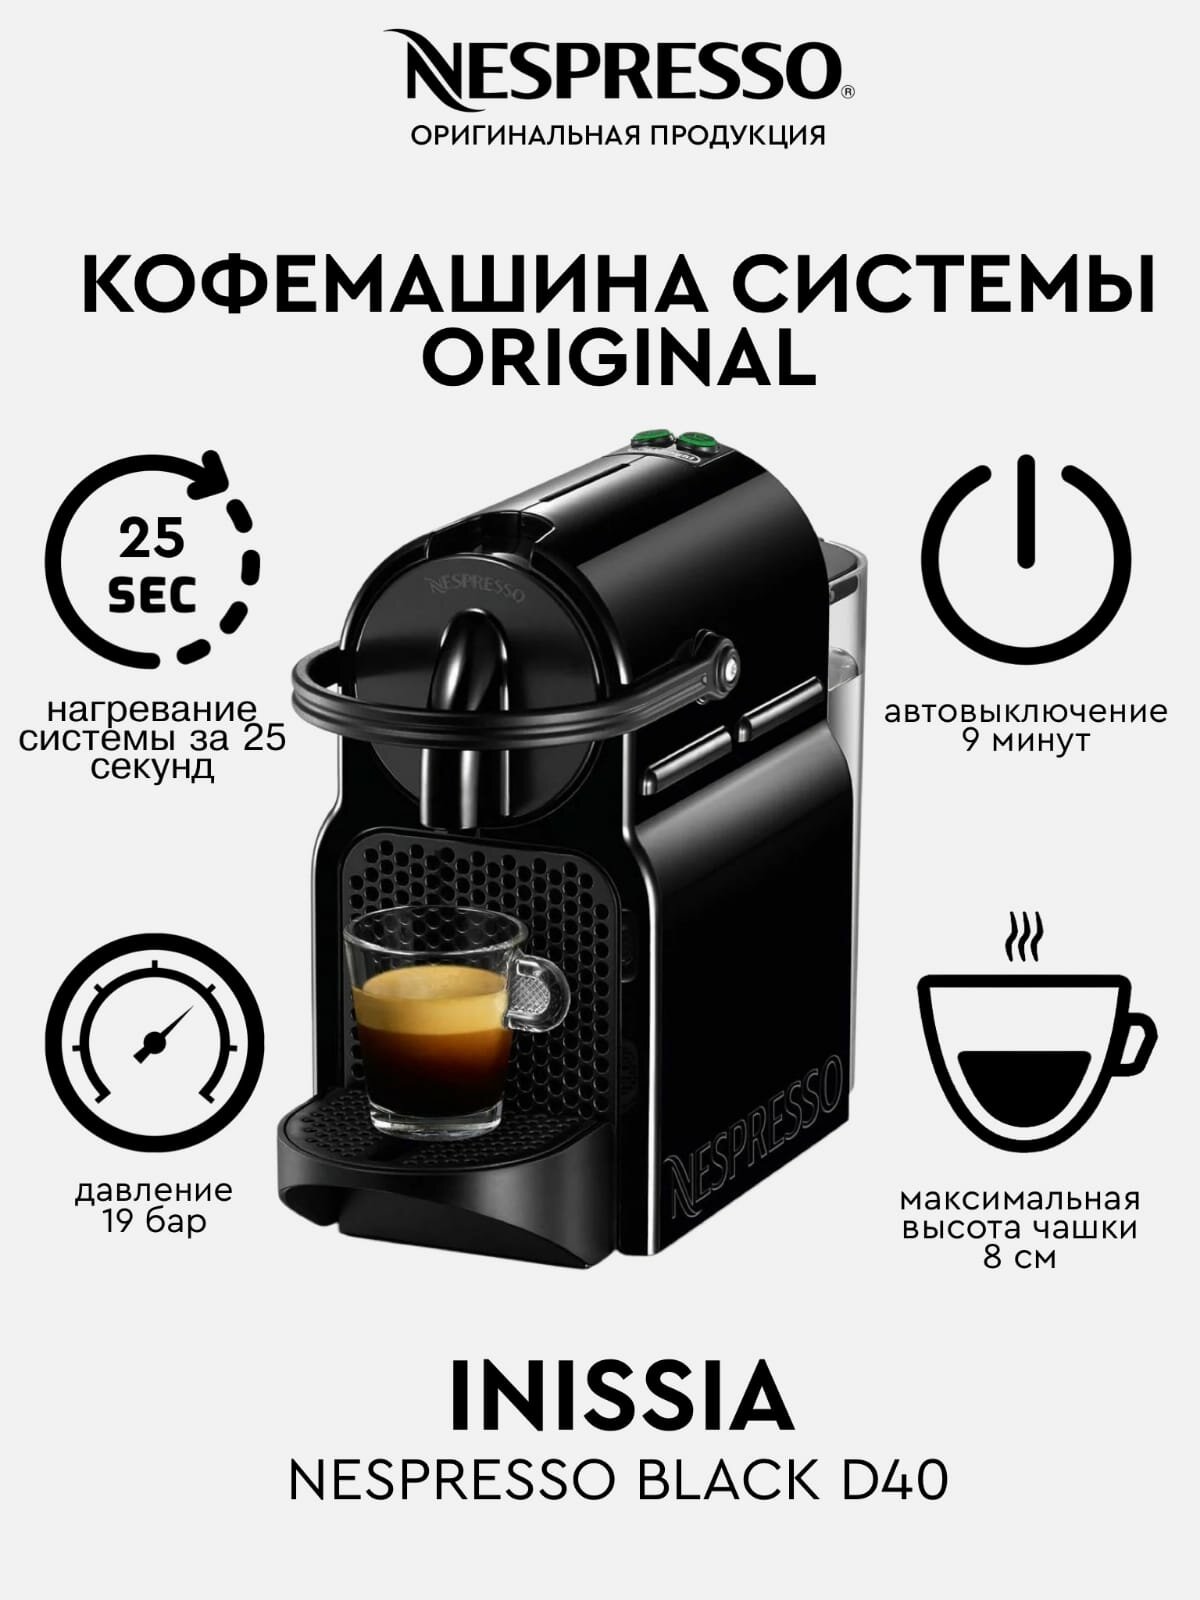 Кофемашина капсульная De'Longhi Nespresso Inissia D40, черный